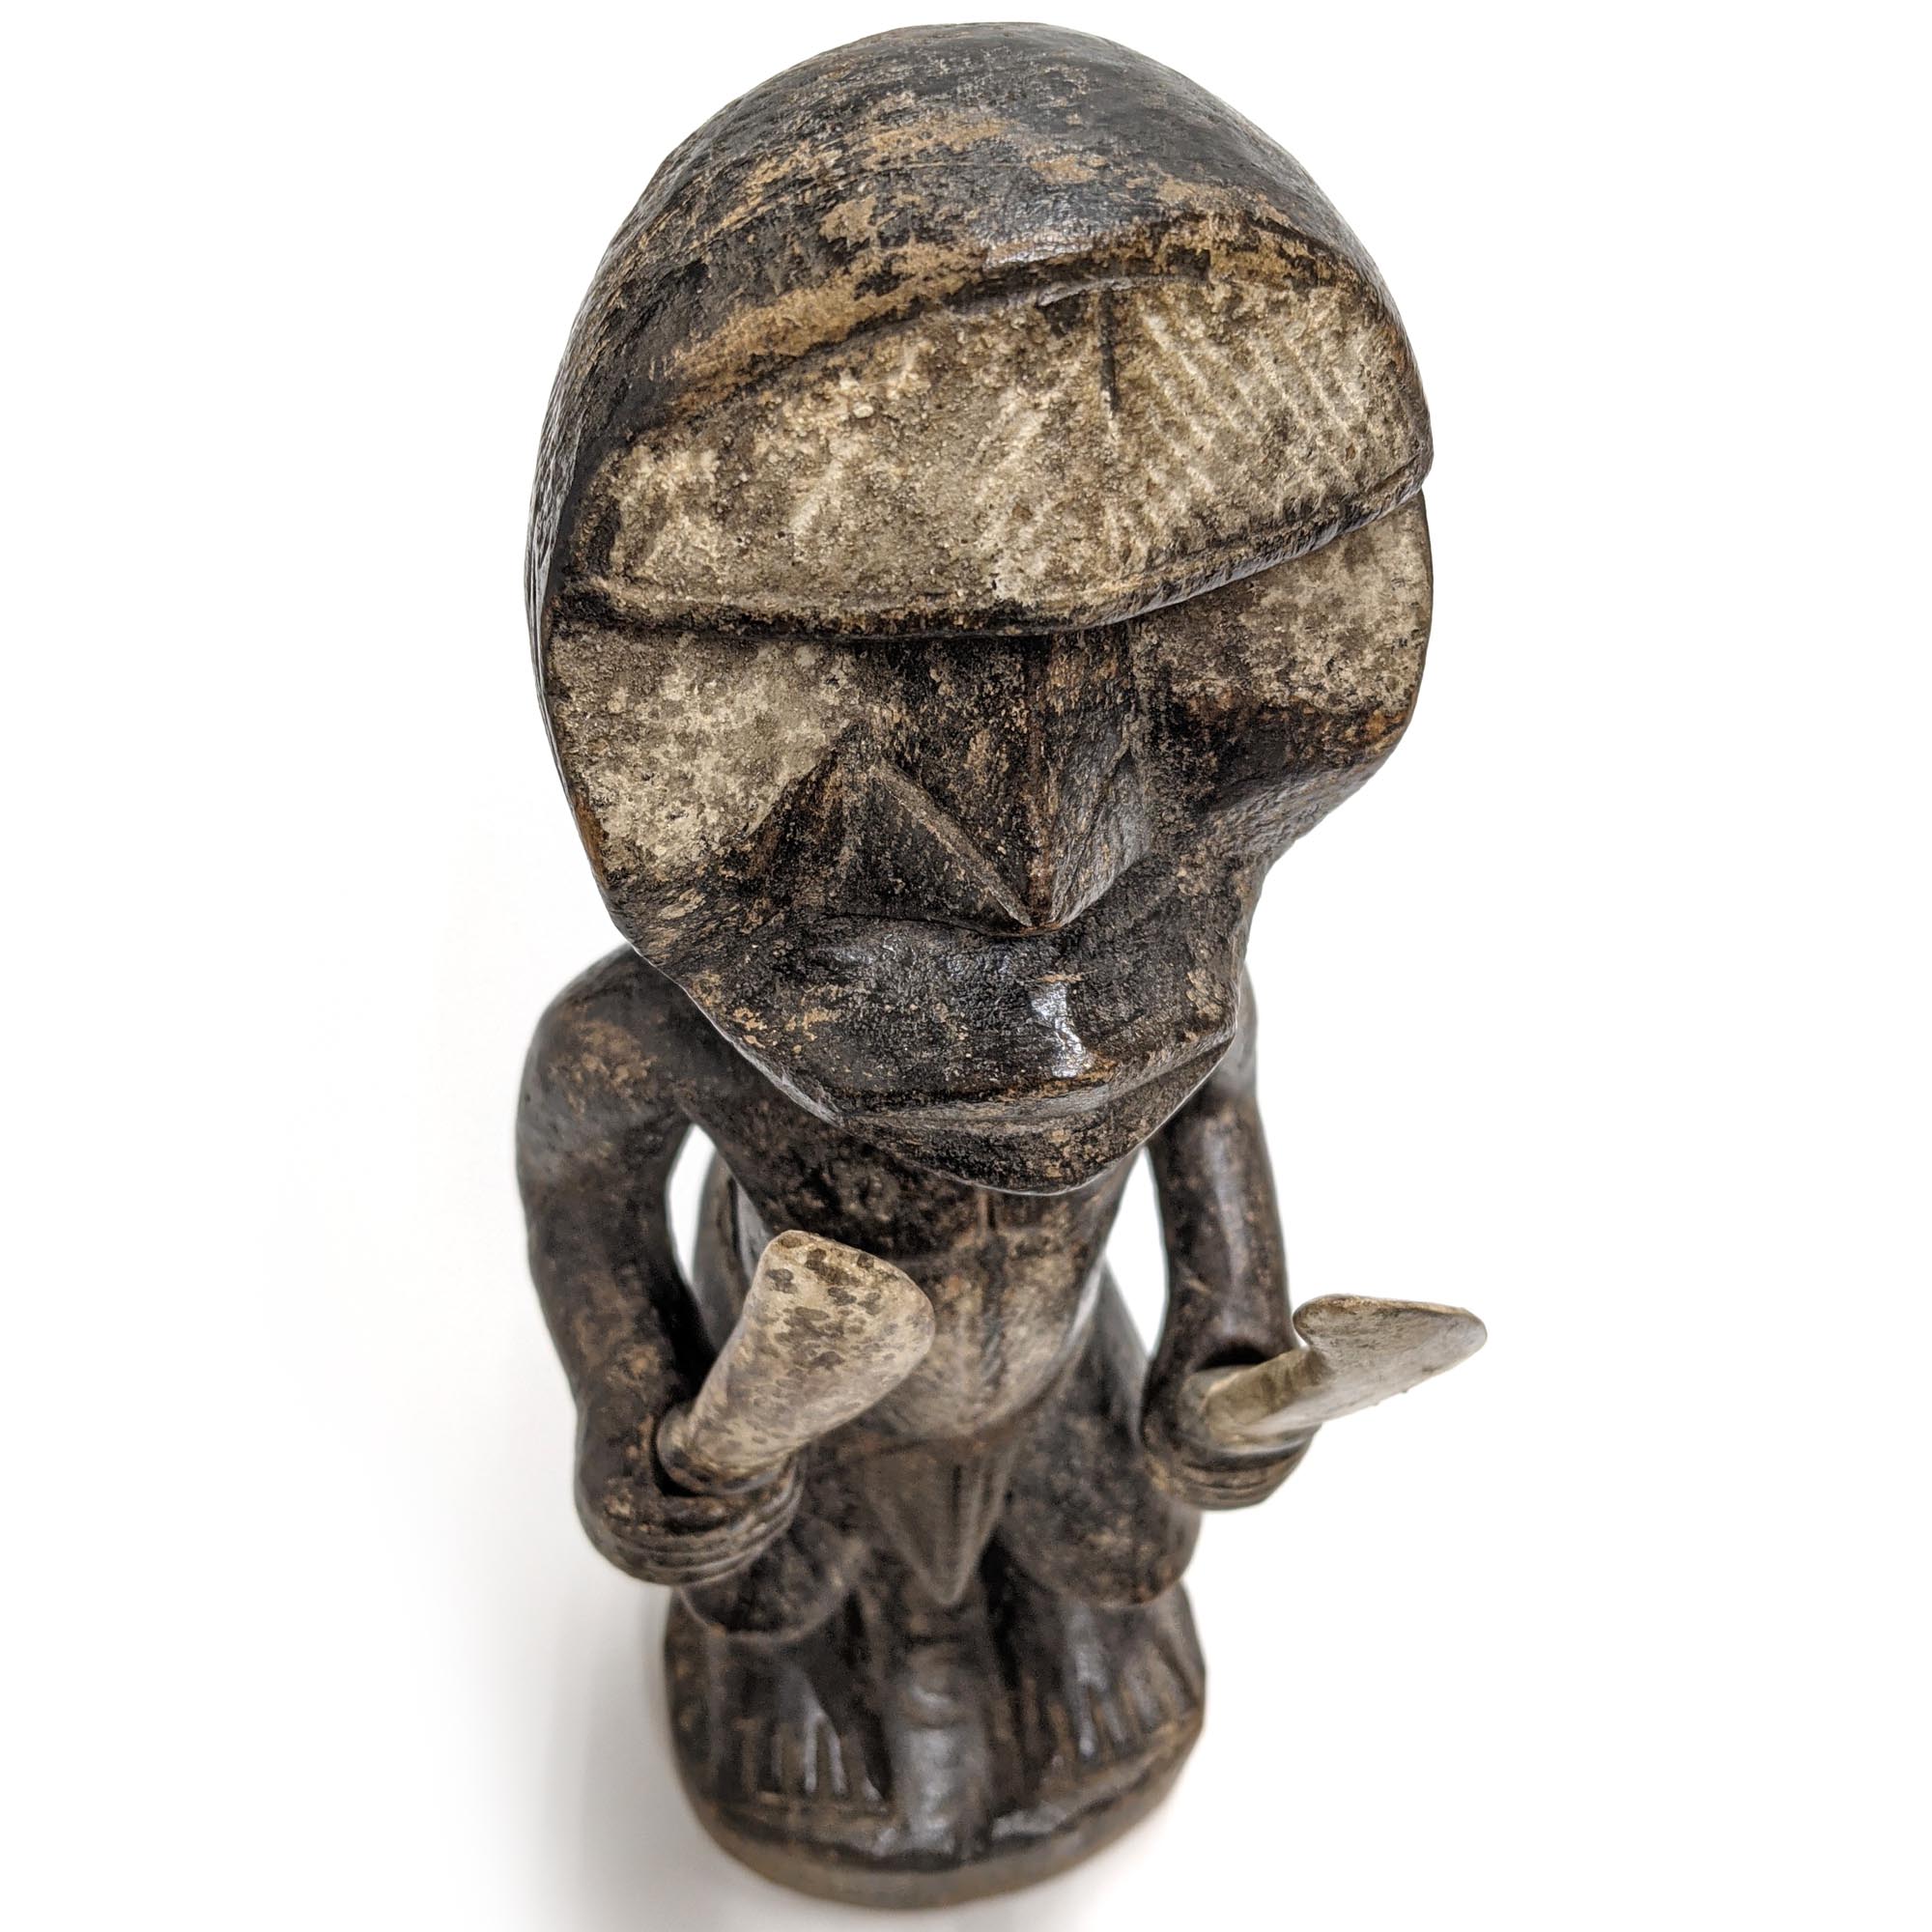 ウェ族戦士像 36cm アフリカ 人形 プリミティブアート 彫像 (c162-22) アフリカ雑貨店 アフロモード